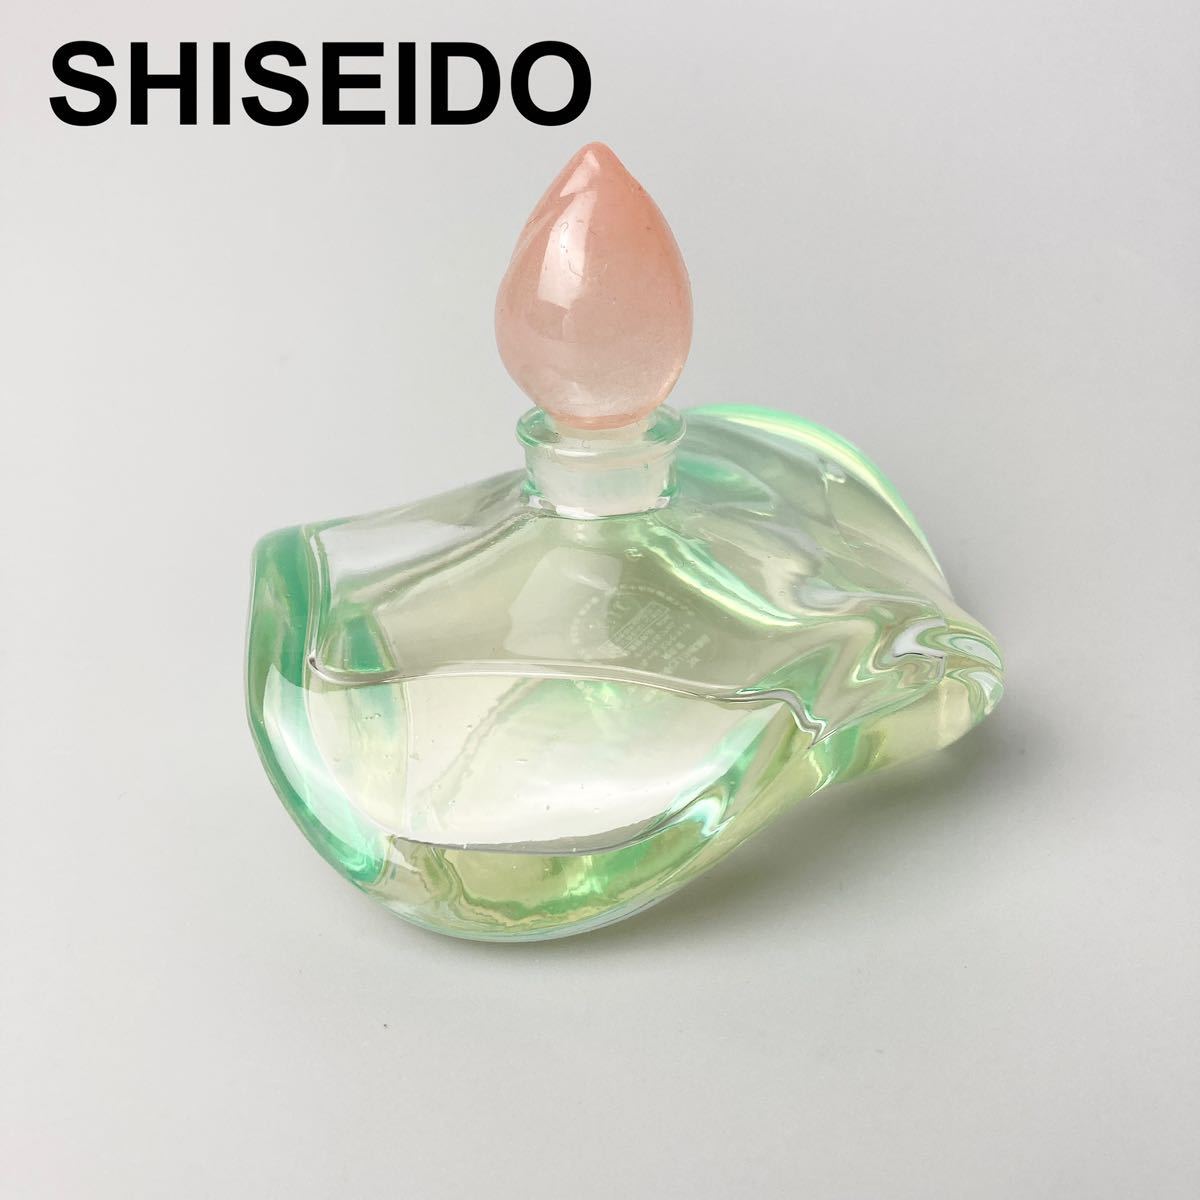 非売品 資生堂 SHISEIDO 花椿会 フルールエクセラント オードパルファム 香水 40ml B112314-126の画像1